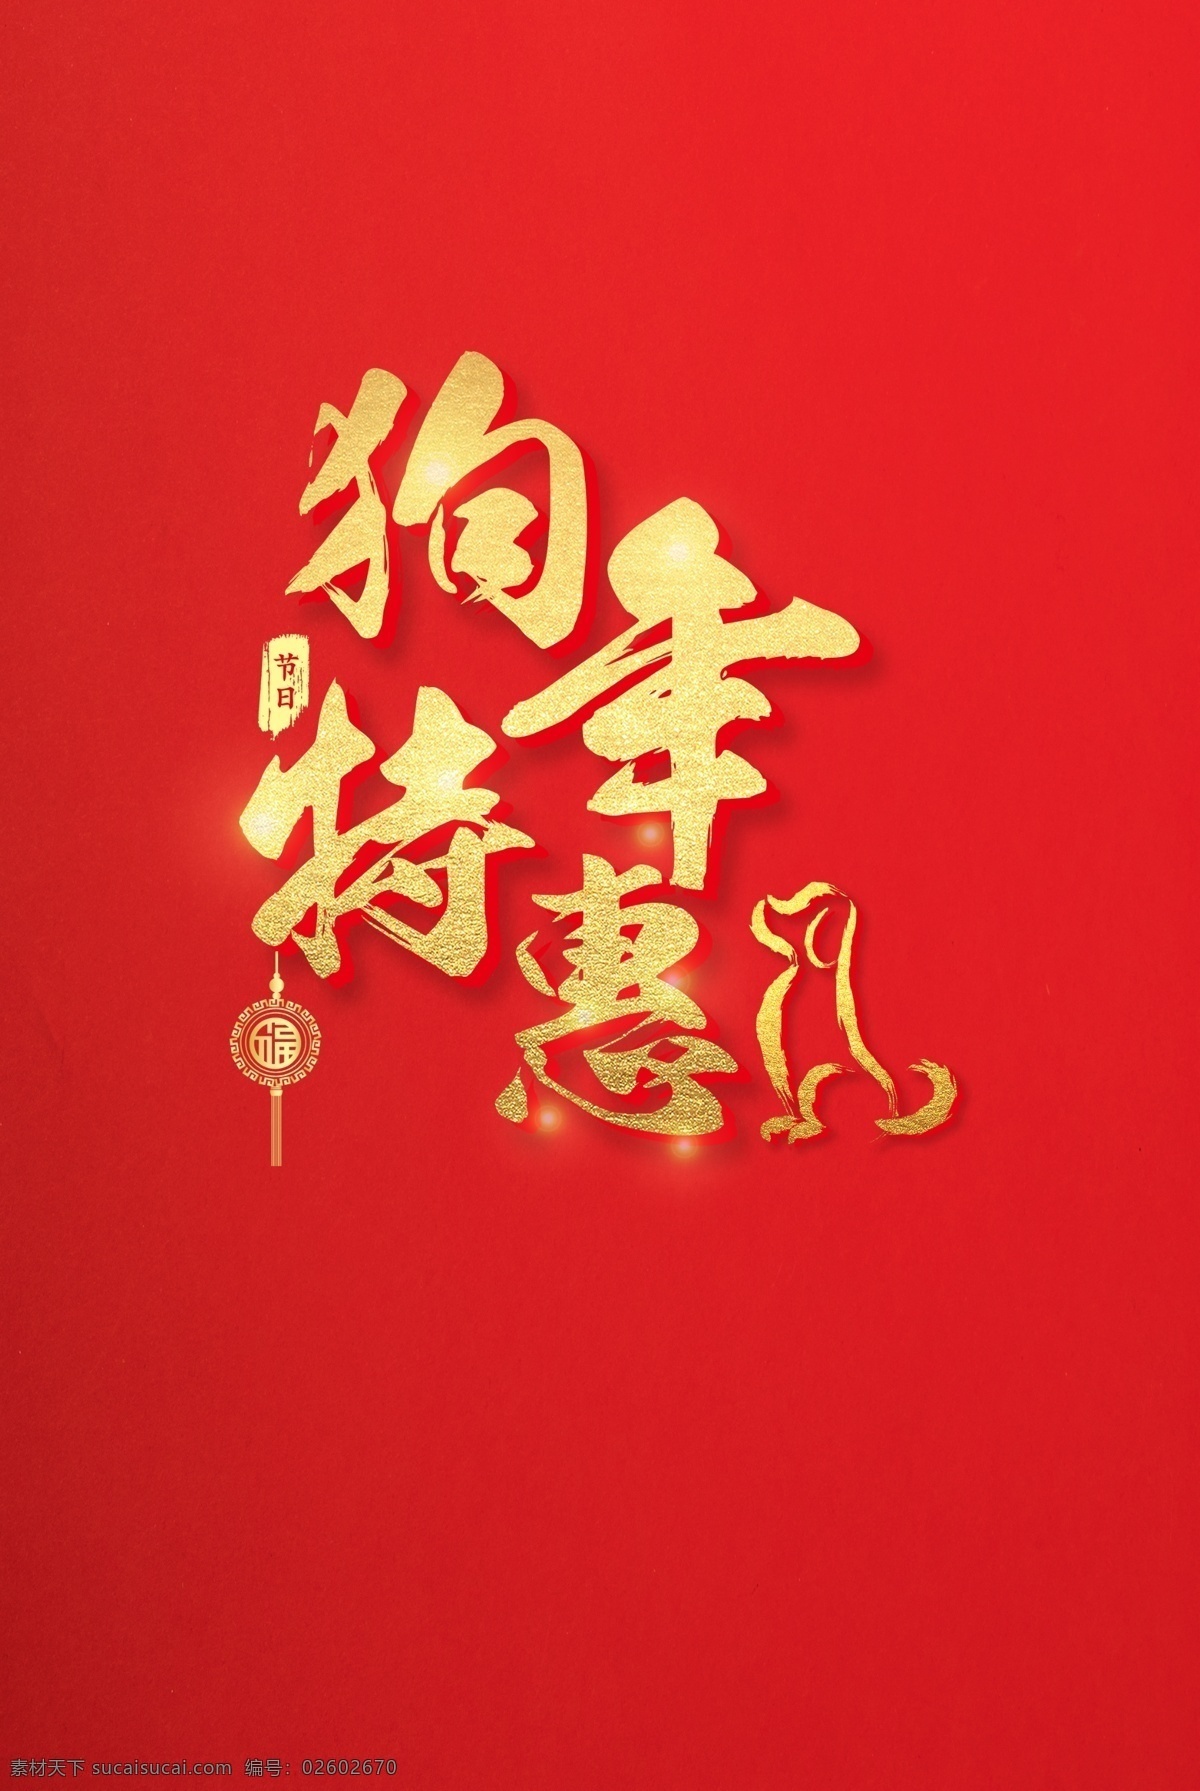 创意素材 恭贺新春 狗年特惠 红色 节日元素 新年元素 元素设计 金色 狗年 特惠 海报 字体